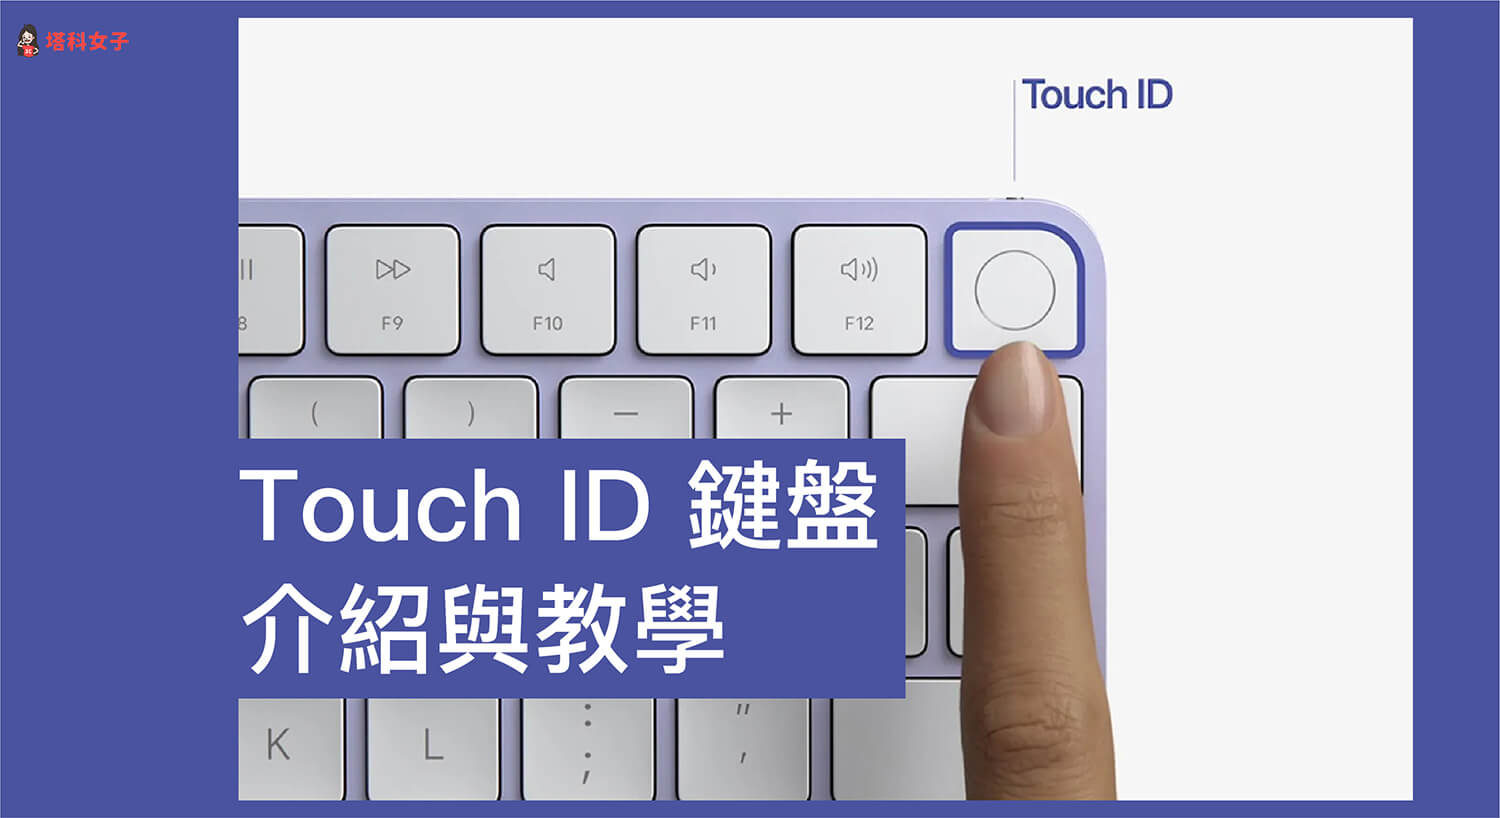 具備 Touch ID 的巧控鍵盤怎麼用？全新 Touch ID 鍵盤介紹與使用教學